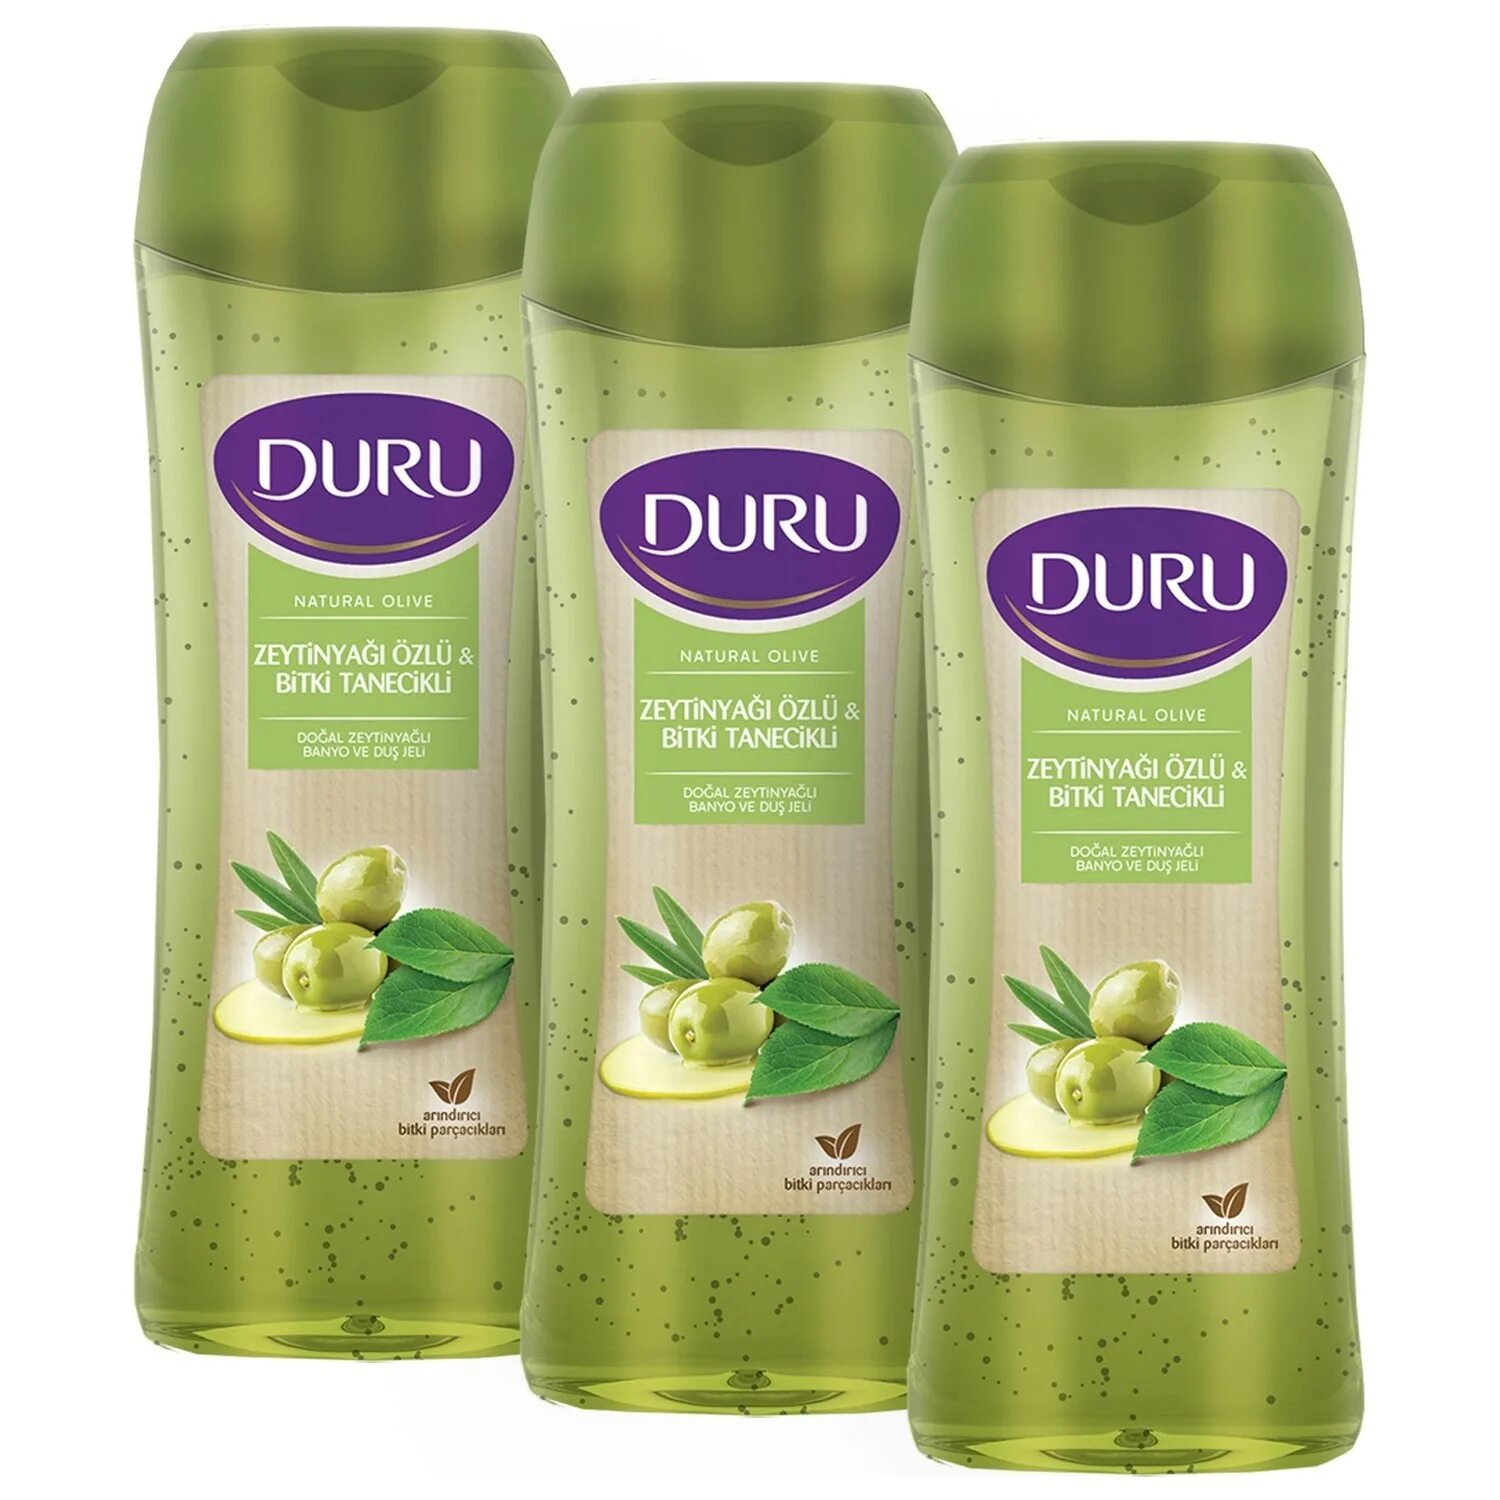 Olive natural. Гель для душа Duru Olive. Шампунь Duru для волос масло оливы. Шампунь Duru производитель.